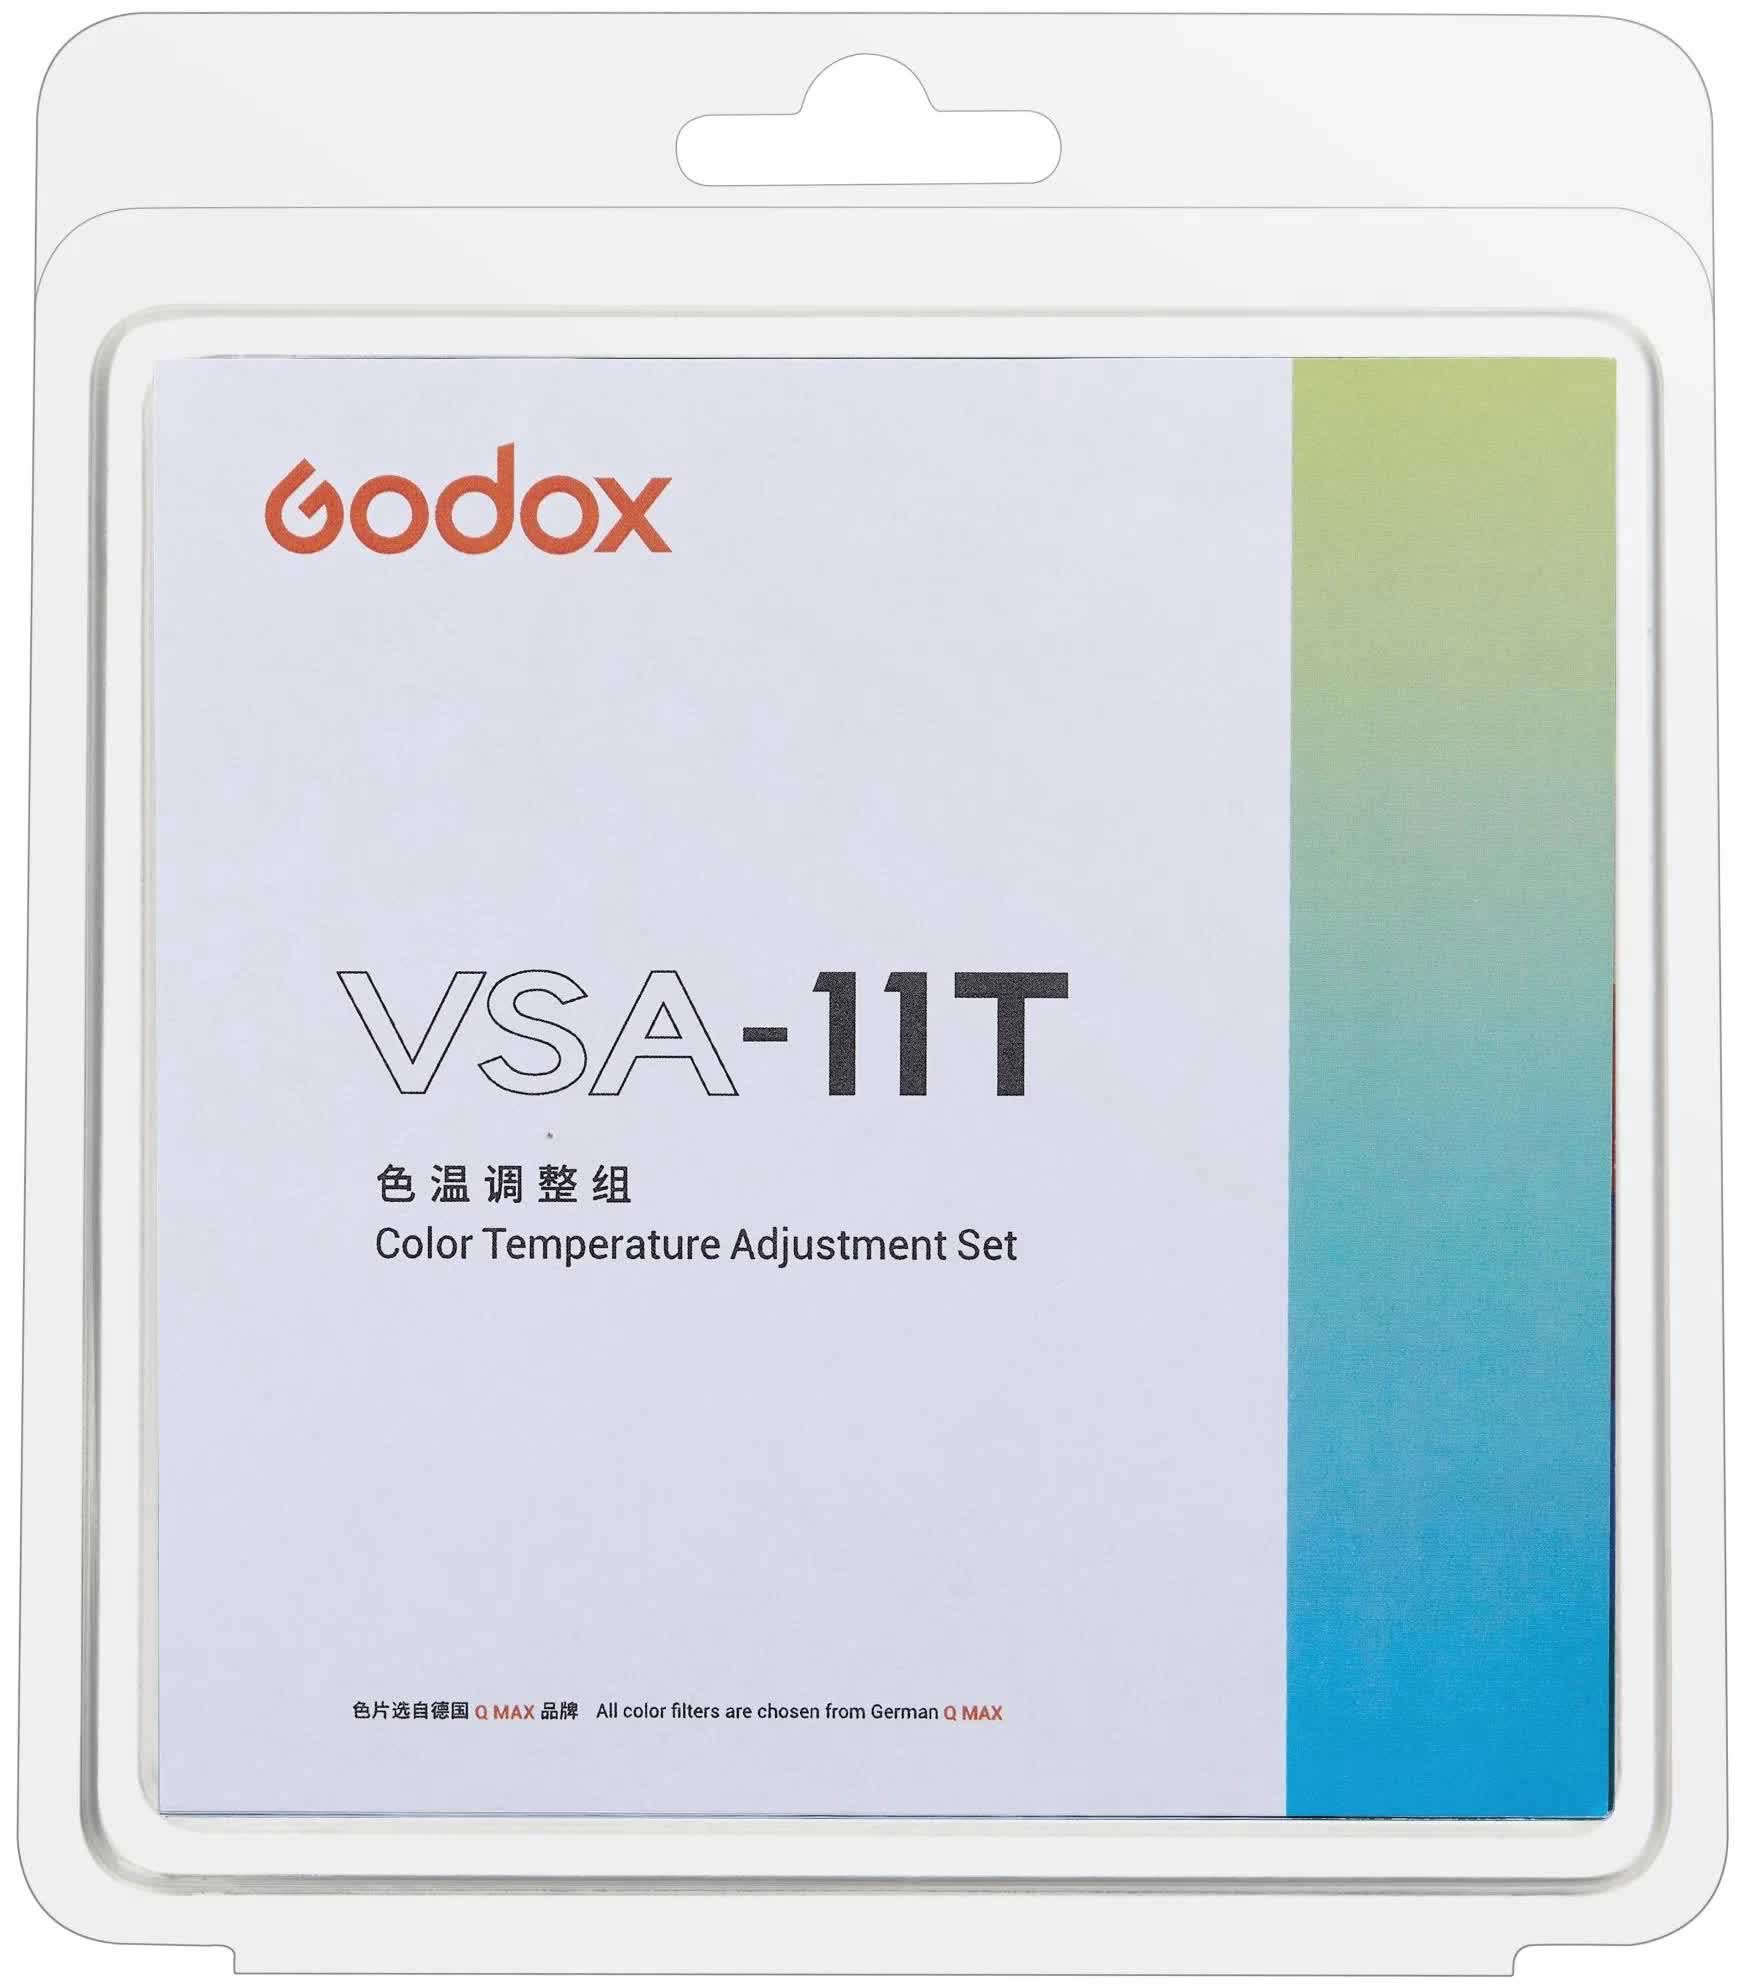 набор цветокоррекционных фильтров godox vsa 11t Набор цветокоррекционных фильтров Godox VSA-11T